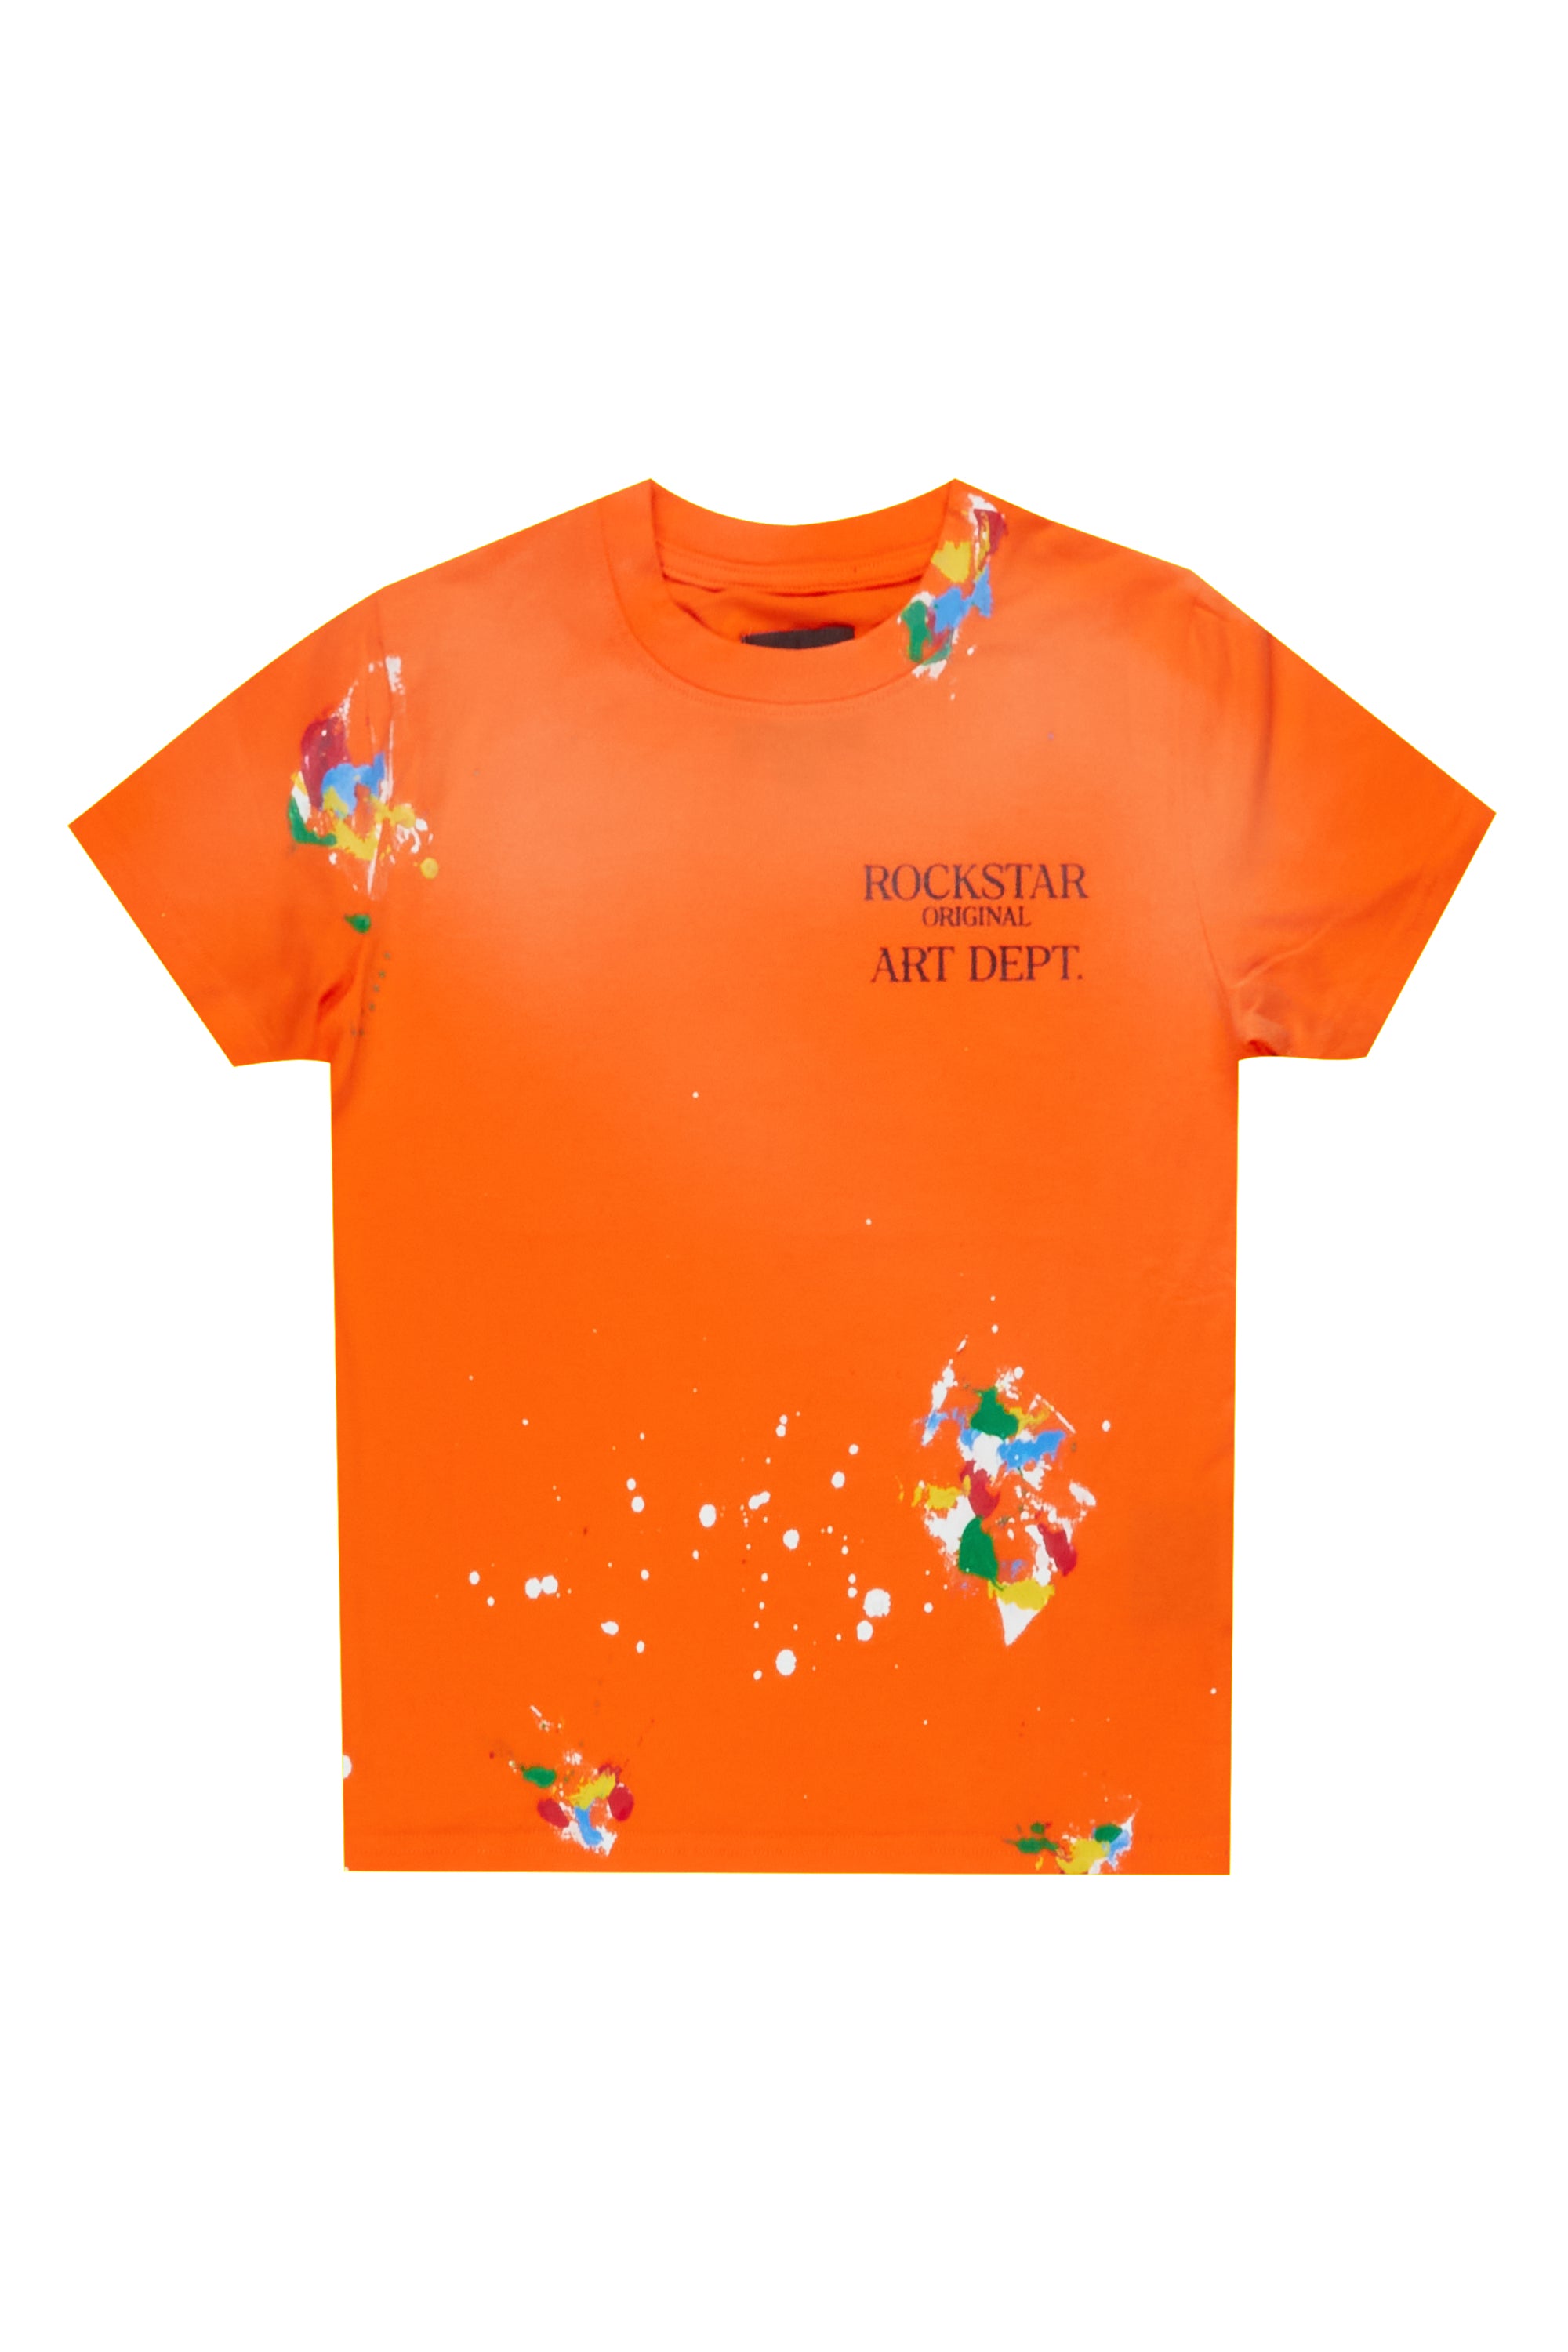 Boys Palmer Orange T-shirt